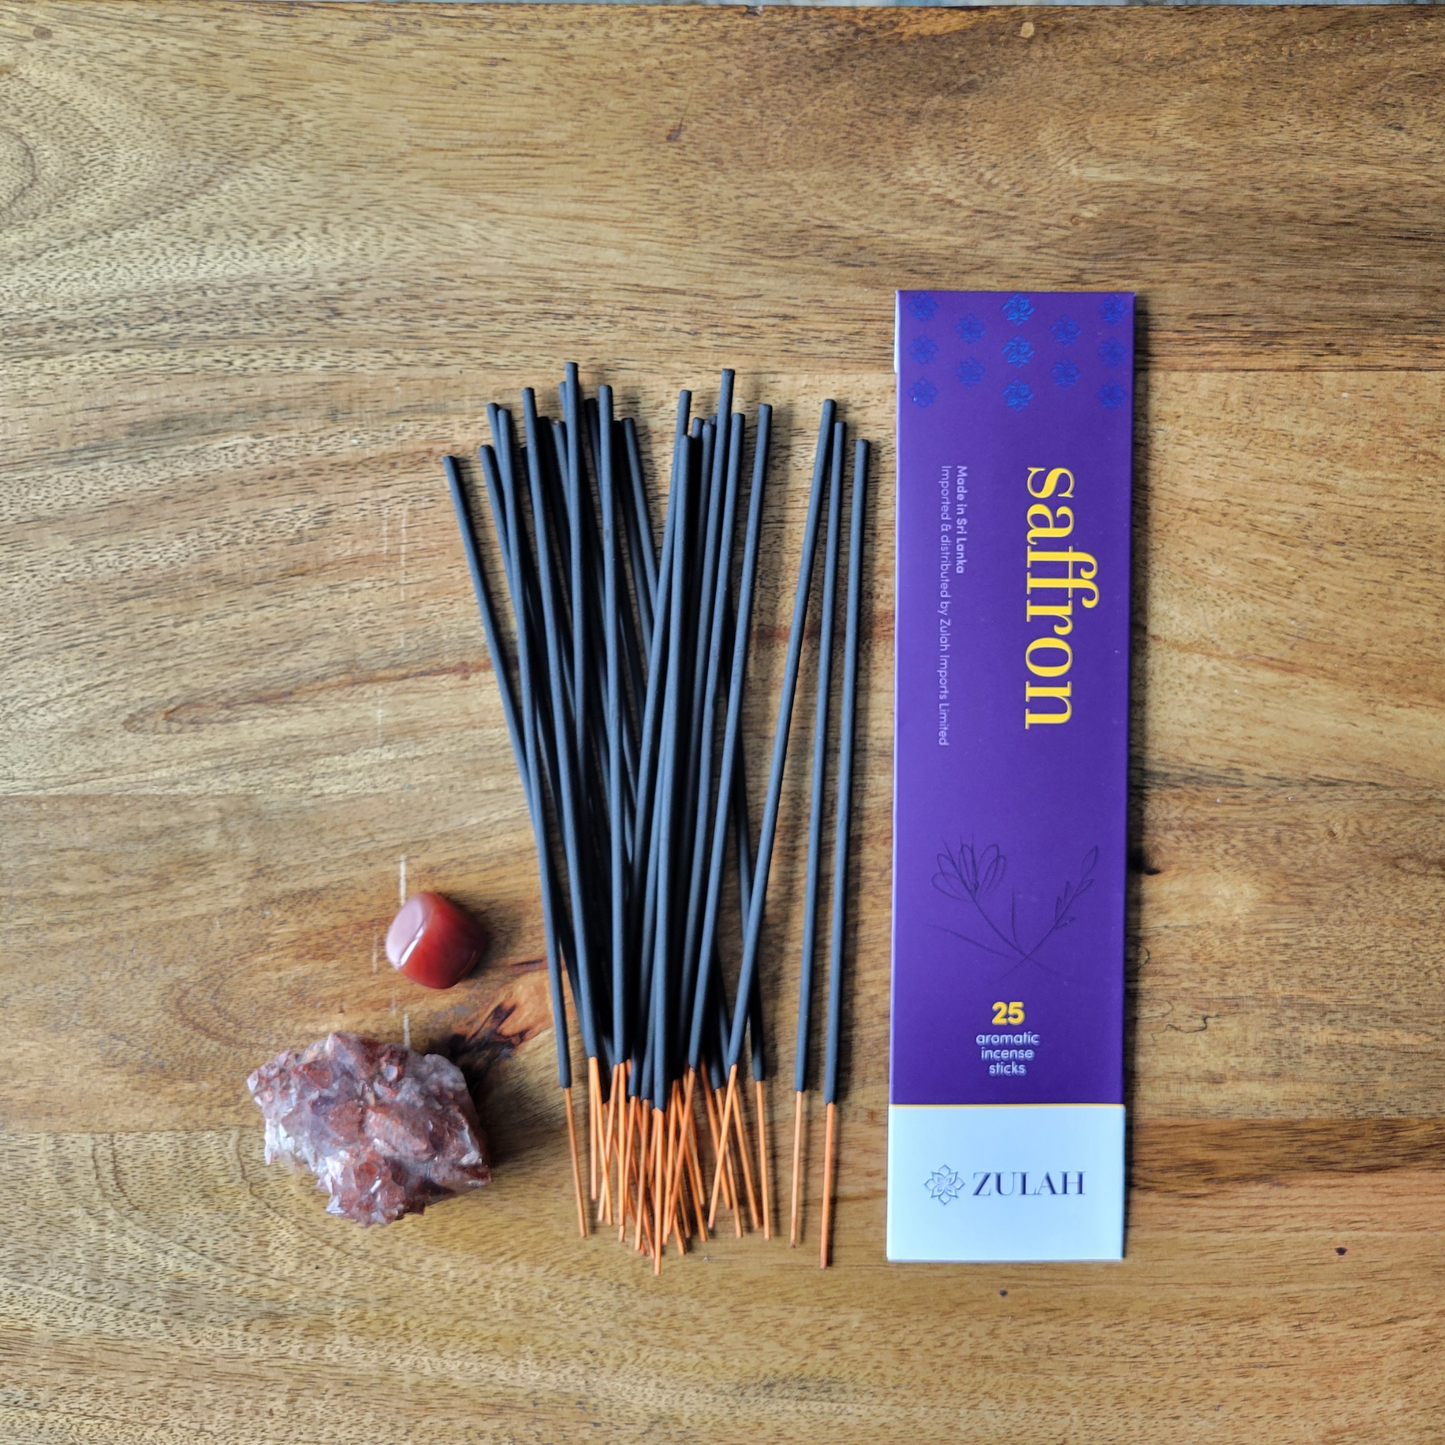 Zulah Canada - Saffron Incense, 25 sticks per pack